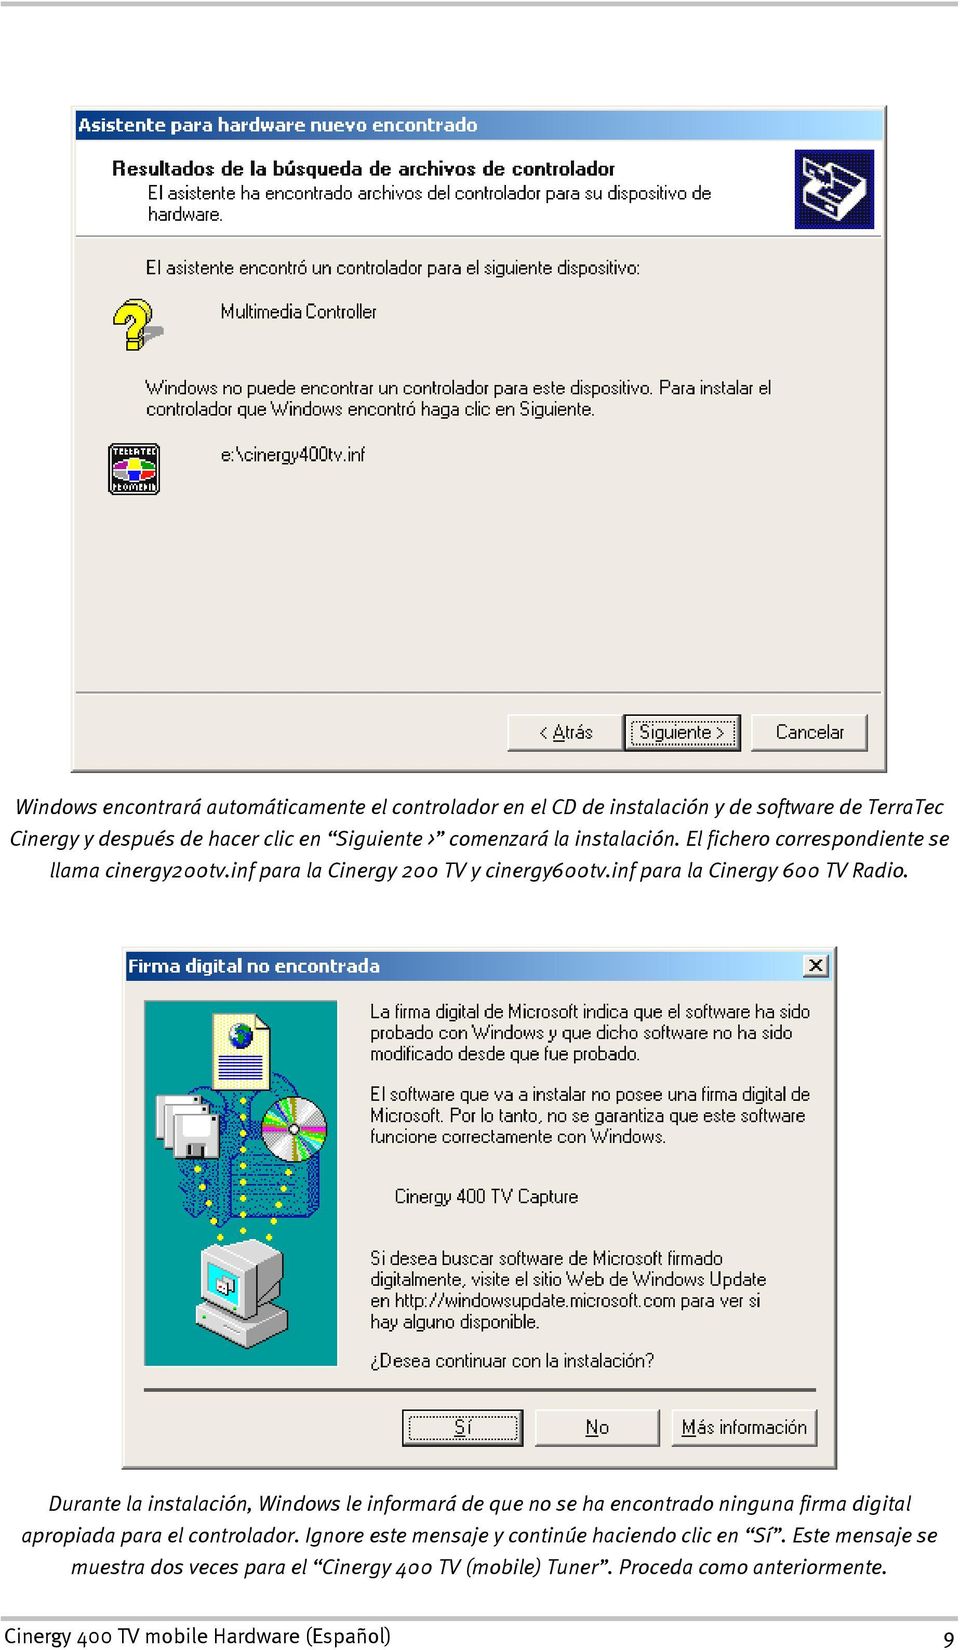 Durante la instalación, Windows le informará de que no se ha encontrado ninguna firma digital apropiada para el controlador.